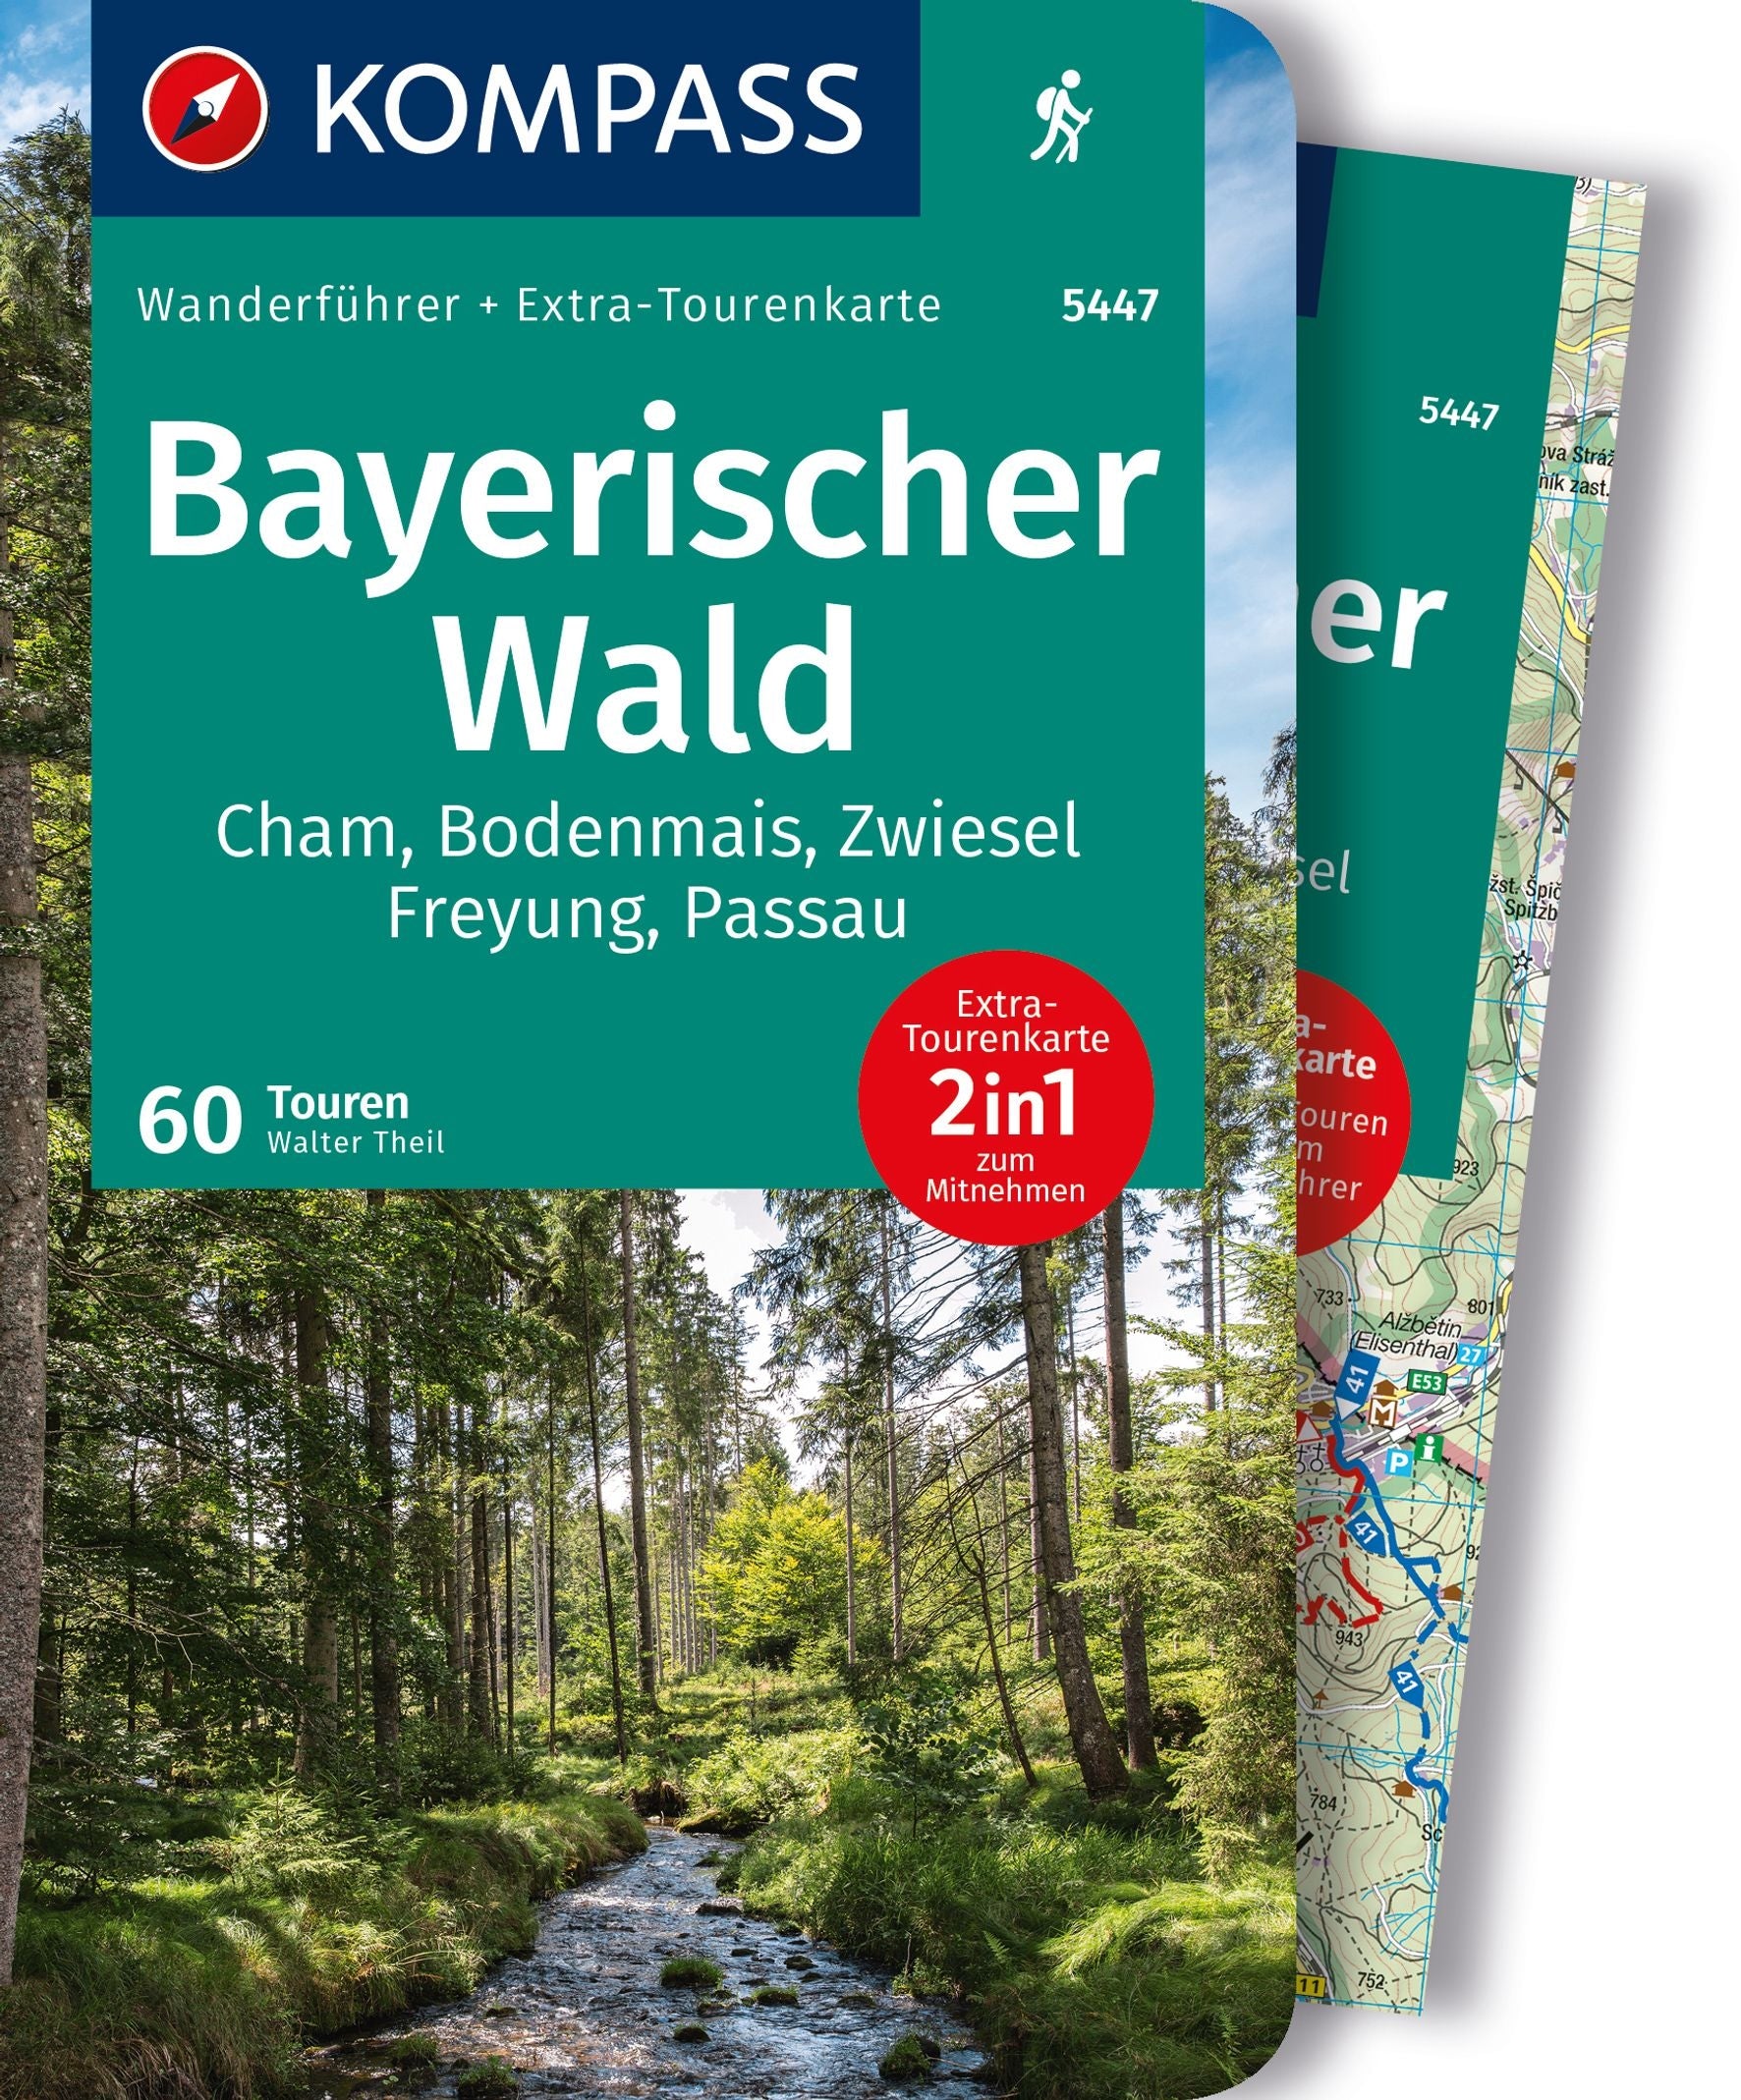 Bayerischer Wald - Wanderführer mit Extra-Tourenkarte - Kompass Wanderführer